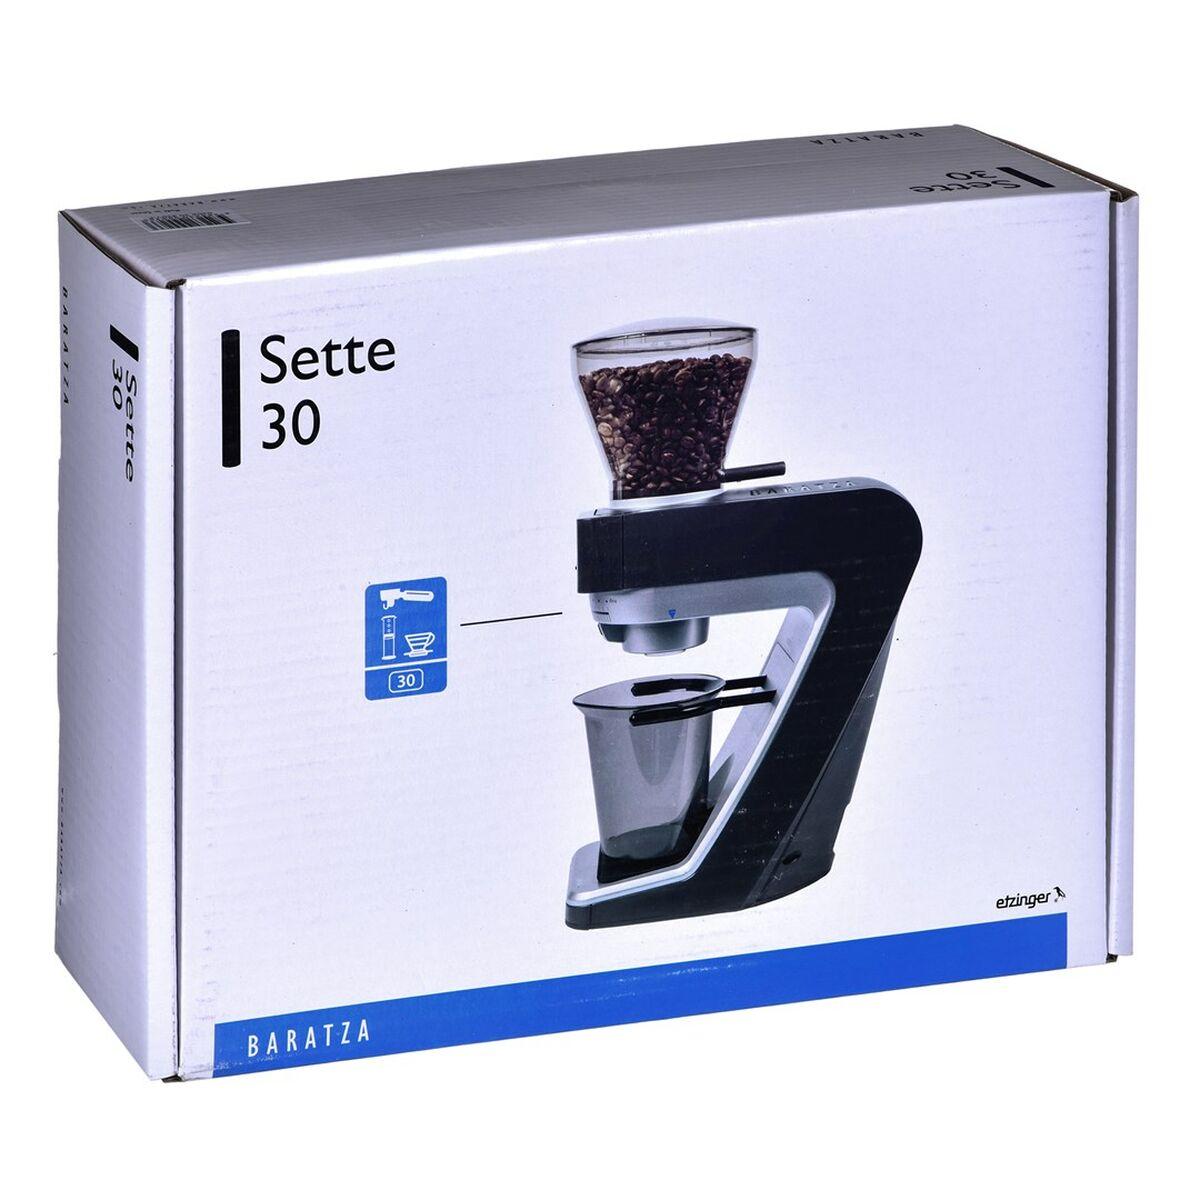 Molinillo de Café Baratza Sette 30 AP 200 W Negro Plateado 400 g